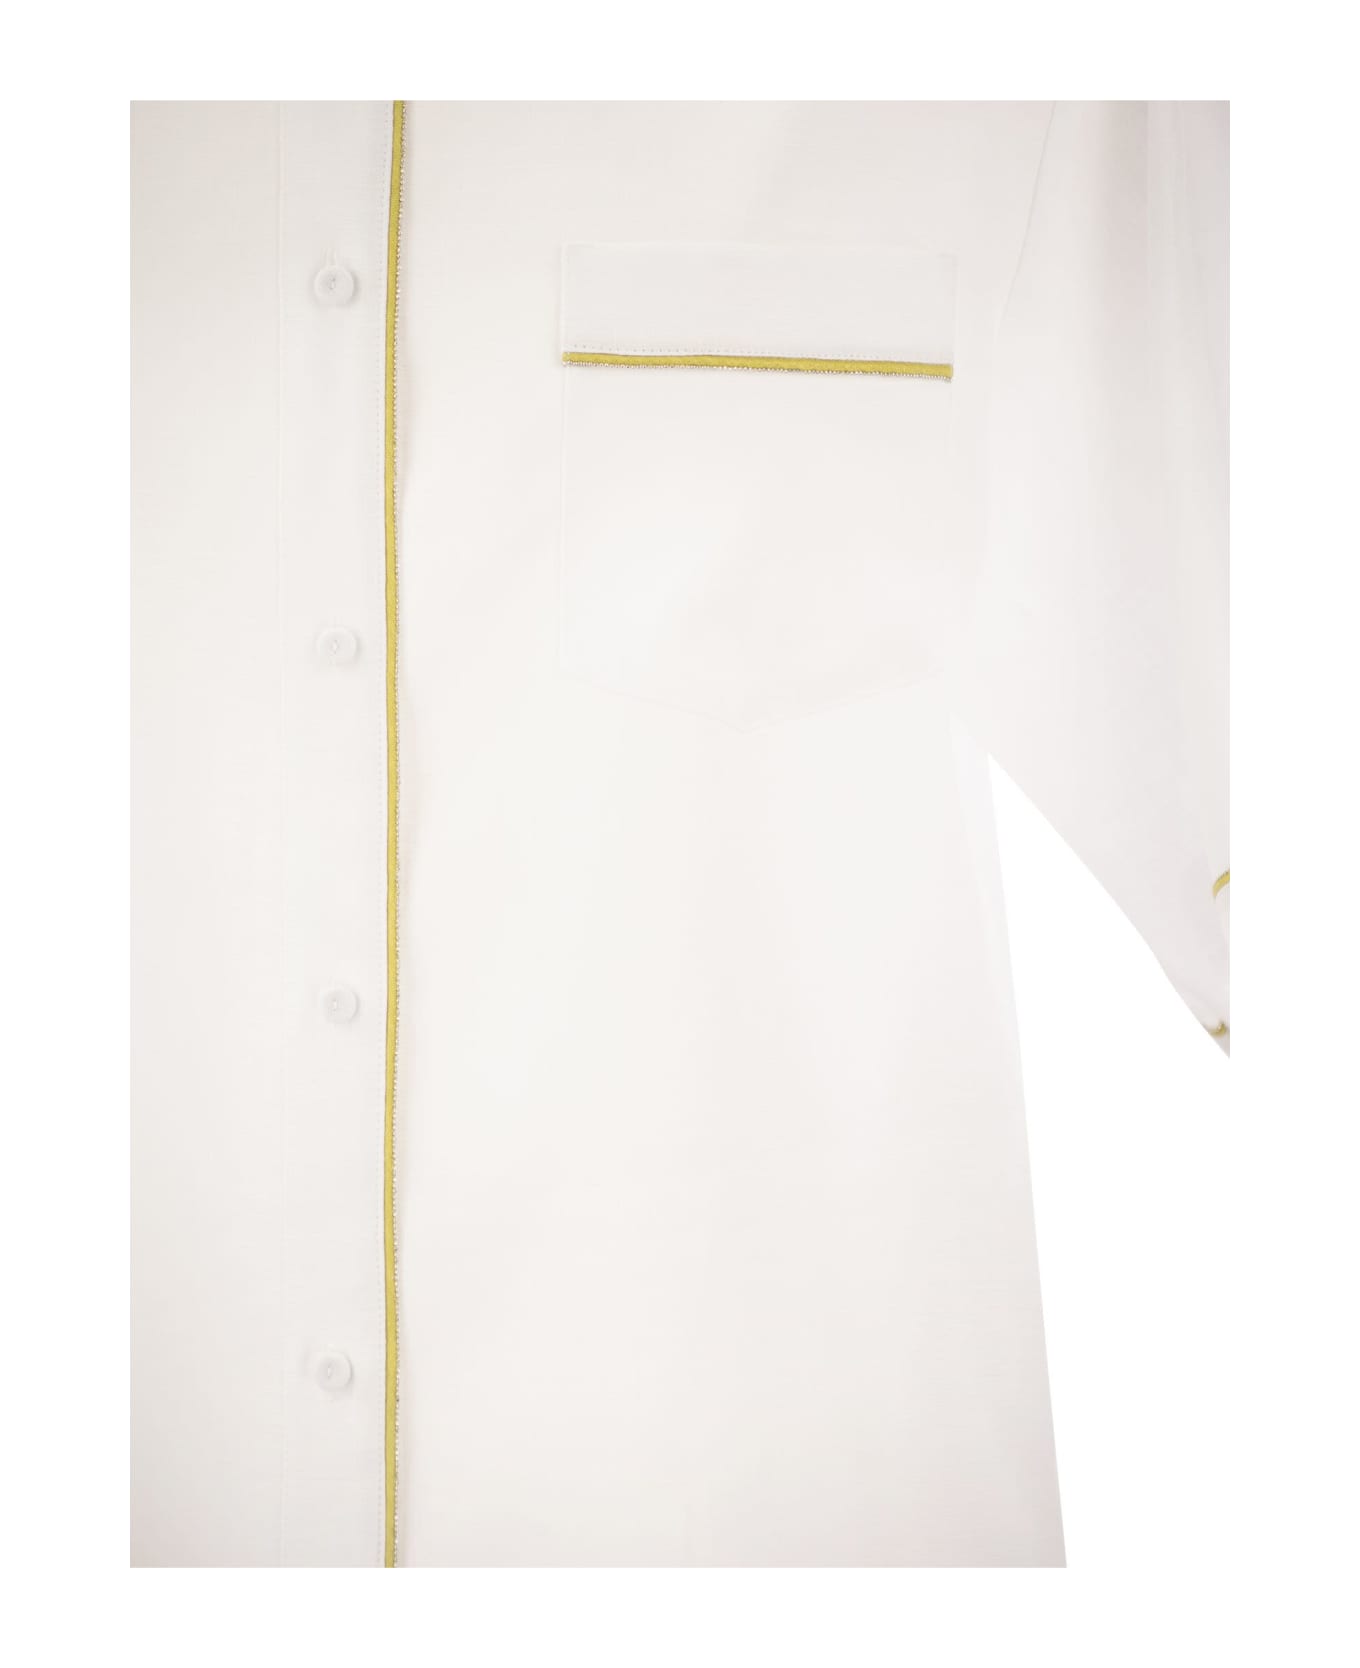 Fabiana Filippi Linen Shirt - White